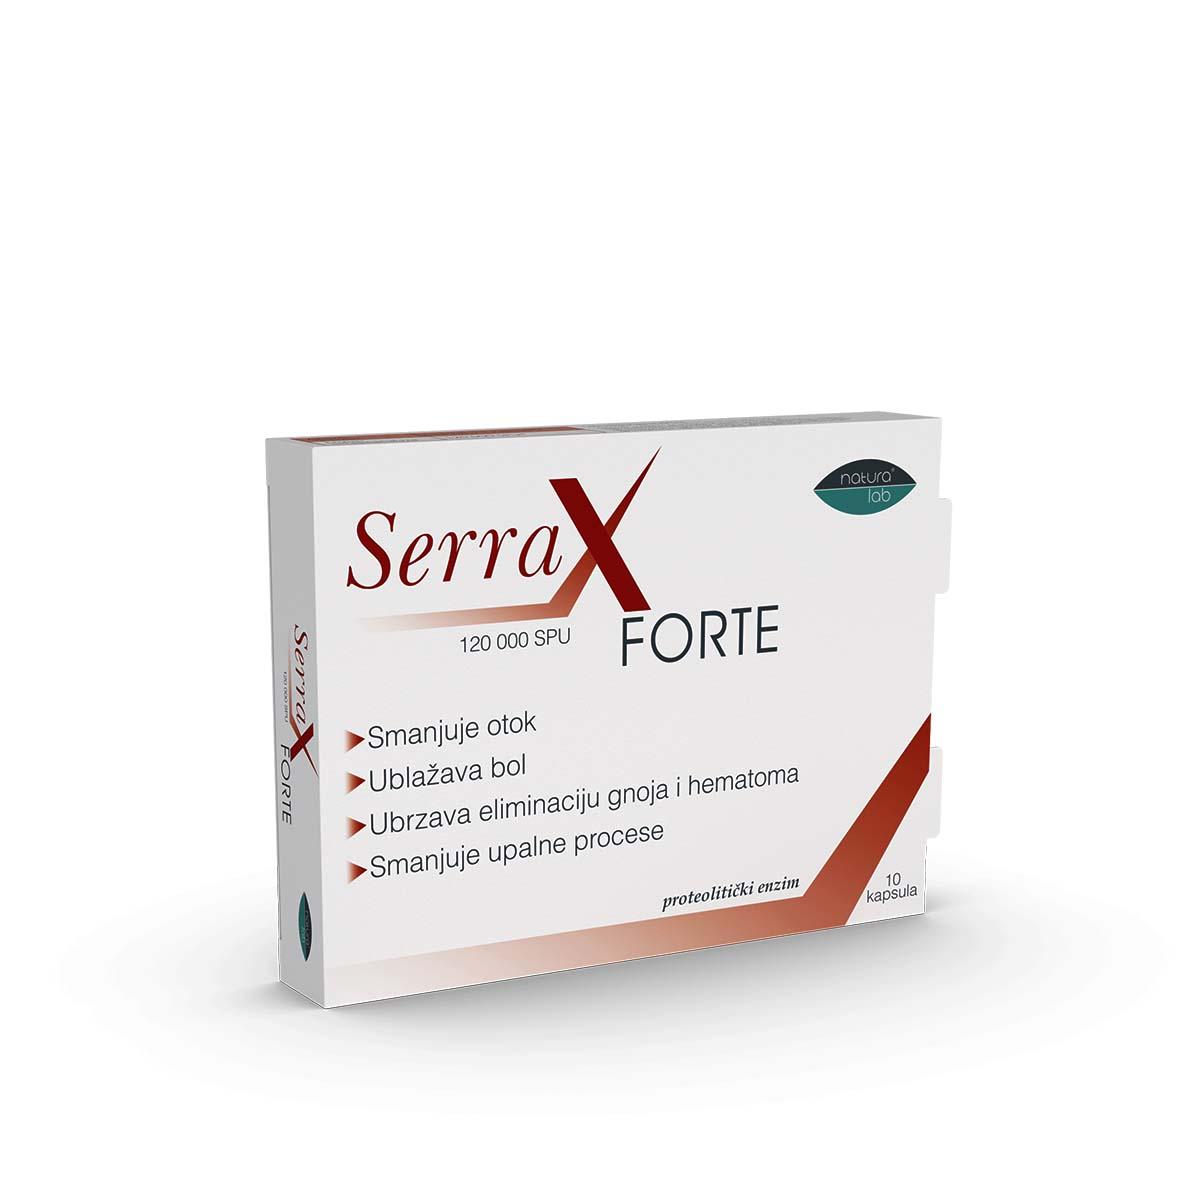 Selected image for Serrax Forte 120000 SPU kapsule 10/1